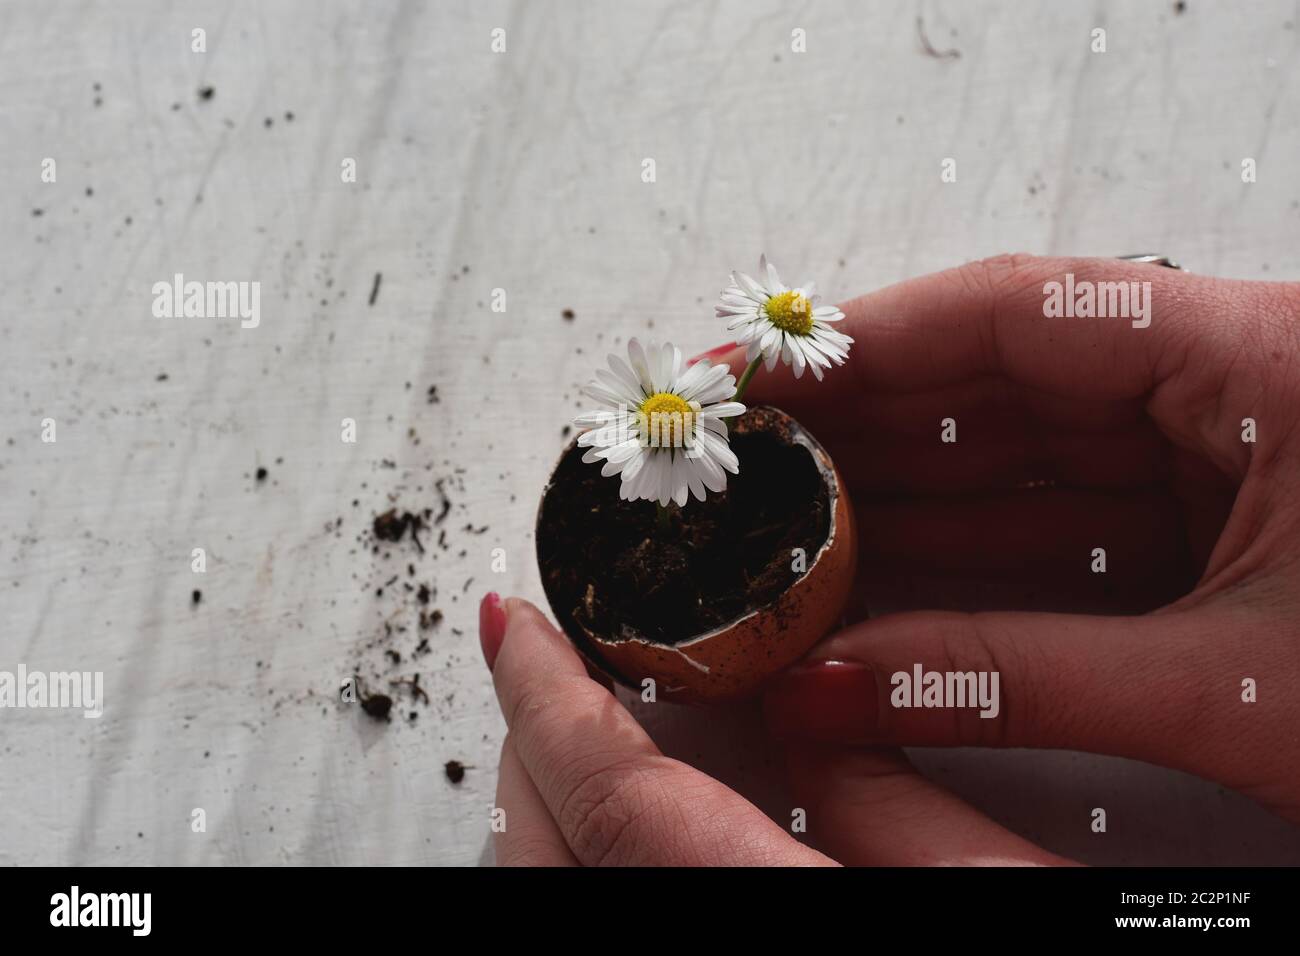 Frau hält Blumenstrauß in der Eierschale / konzeptuelles Bild von Hoffnung und neuem Leben Stockfoto